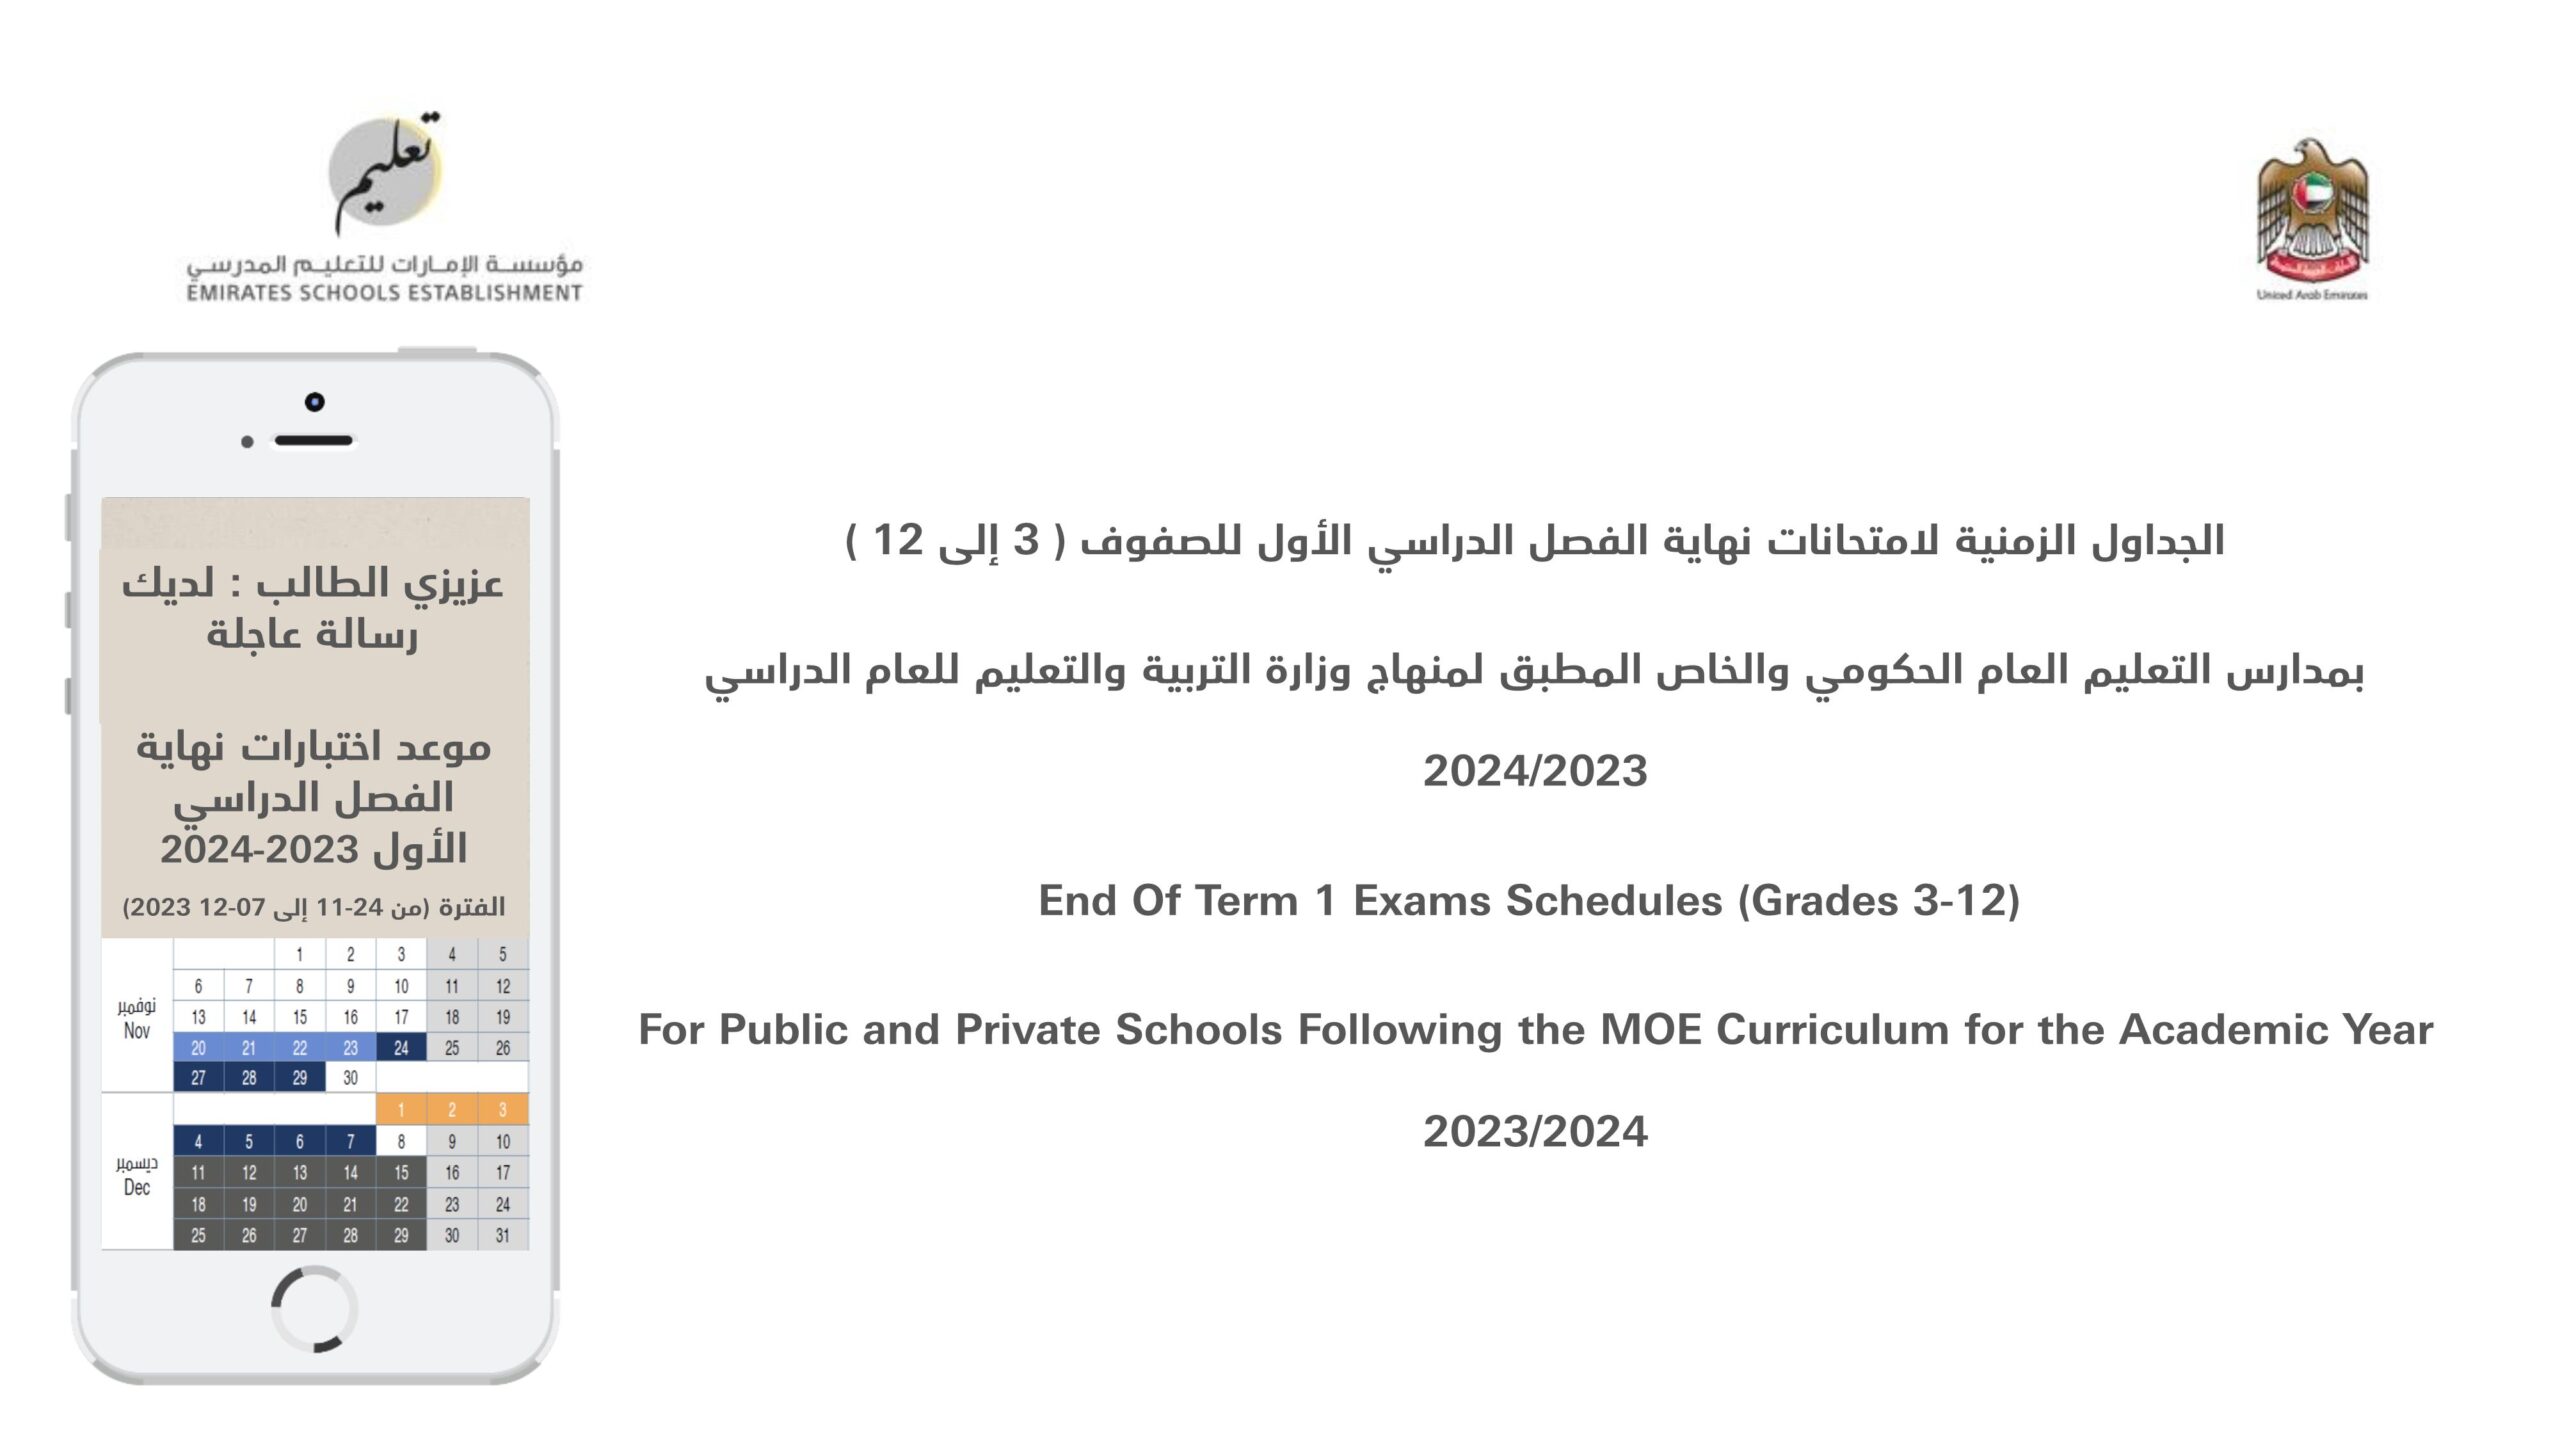 الجداول الزمنية المحدثة لامتحانات نهاية الفصل الدراسي الأول 2023-2024 من الصف الثالث إلى الصف الثاني عشر